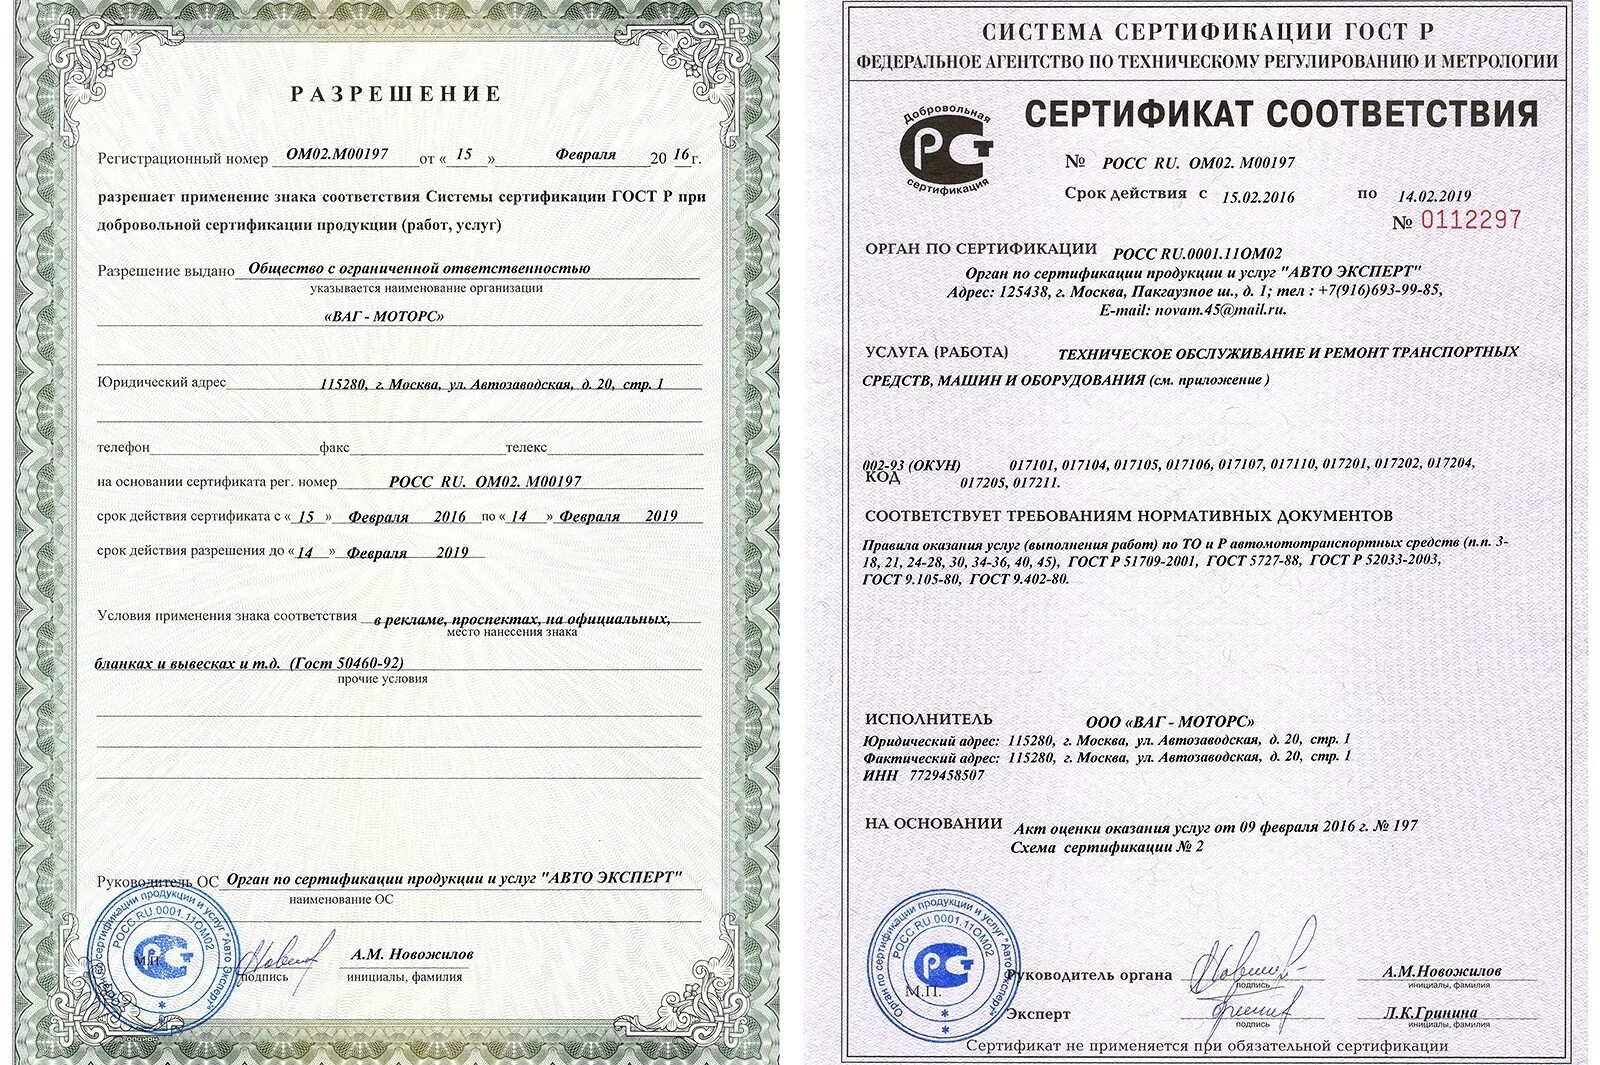 Сертификат соответствия. Сертификат соотвестви. Сертификат соответствия на товар. Обязательный сертификат качества.